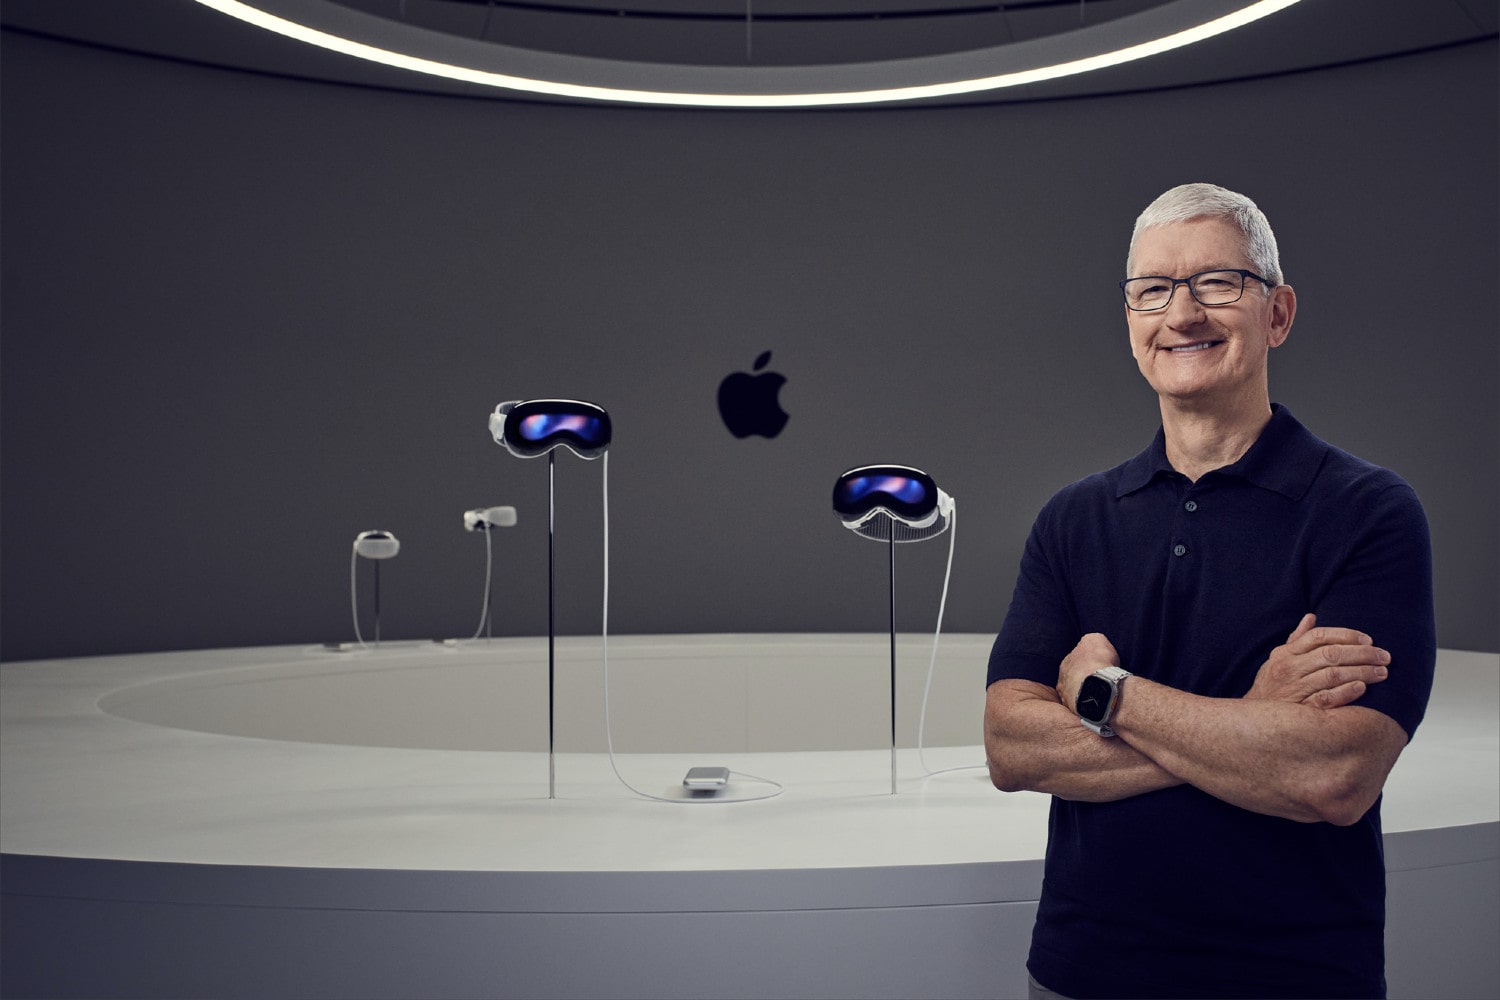 एप्पल के सीईओ टिम कुक चार विज़न प्रो हेडसेट के सामने खड़े हैं।